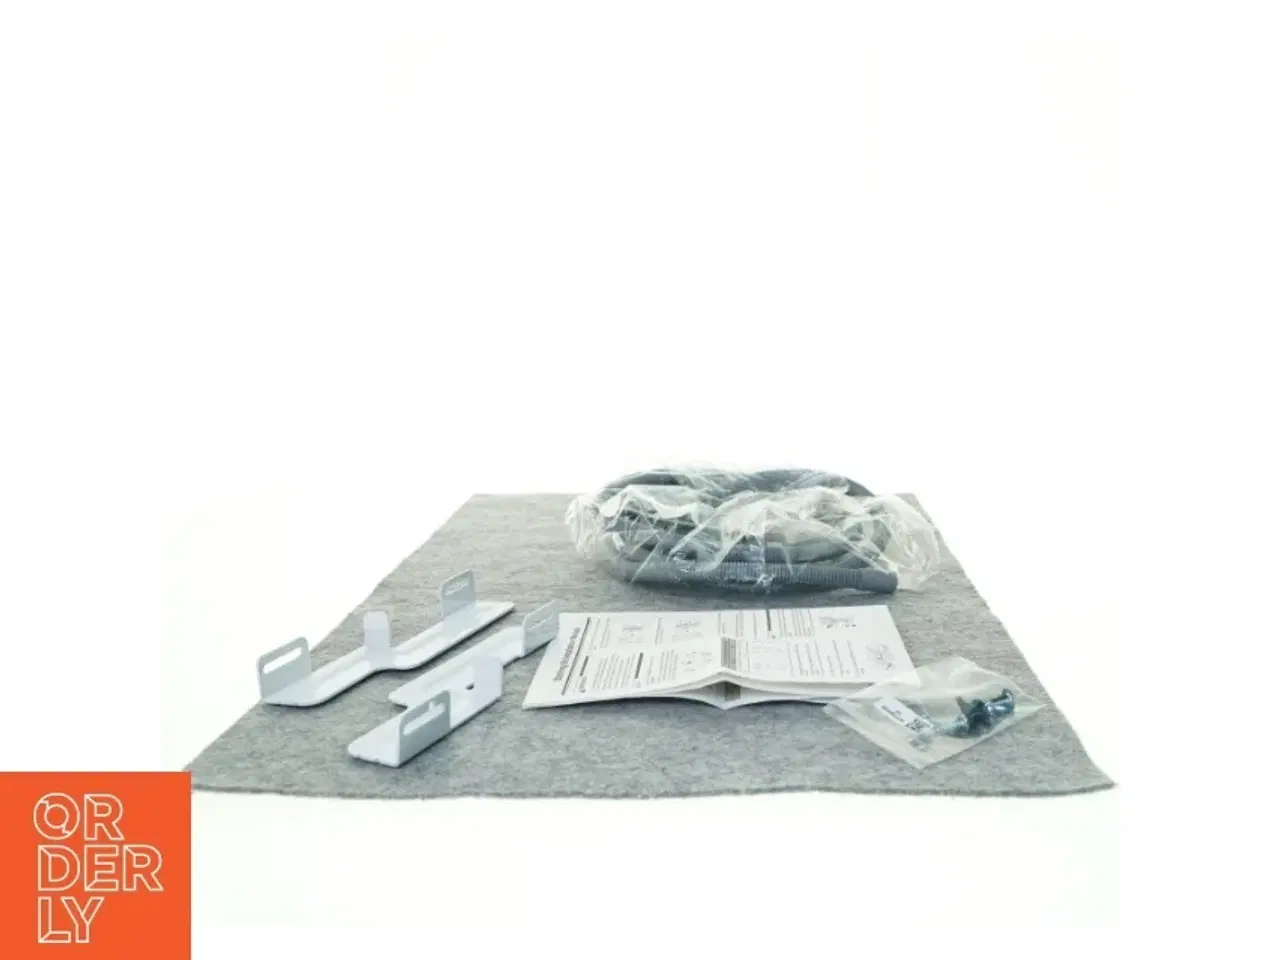 Billede 1 - Stacking kit og slanger til LG vaskesøjle I ORIGINAL EMBALLAGE (str. 24 x 22 cm)